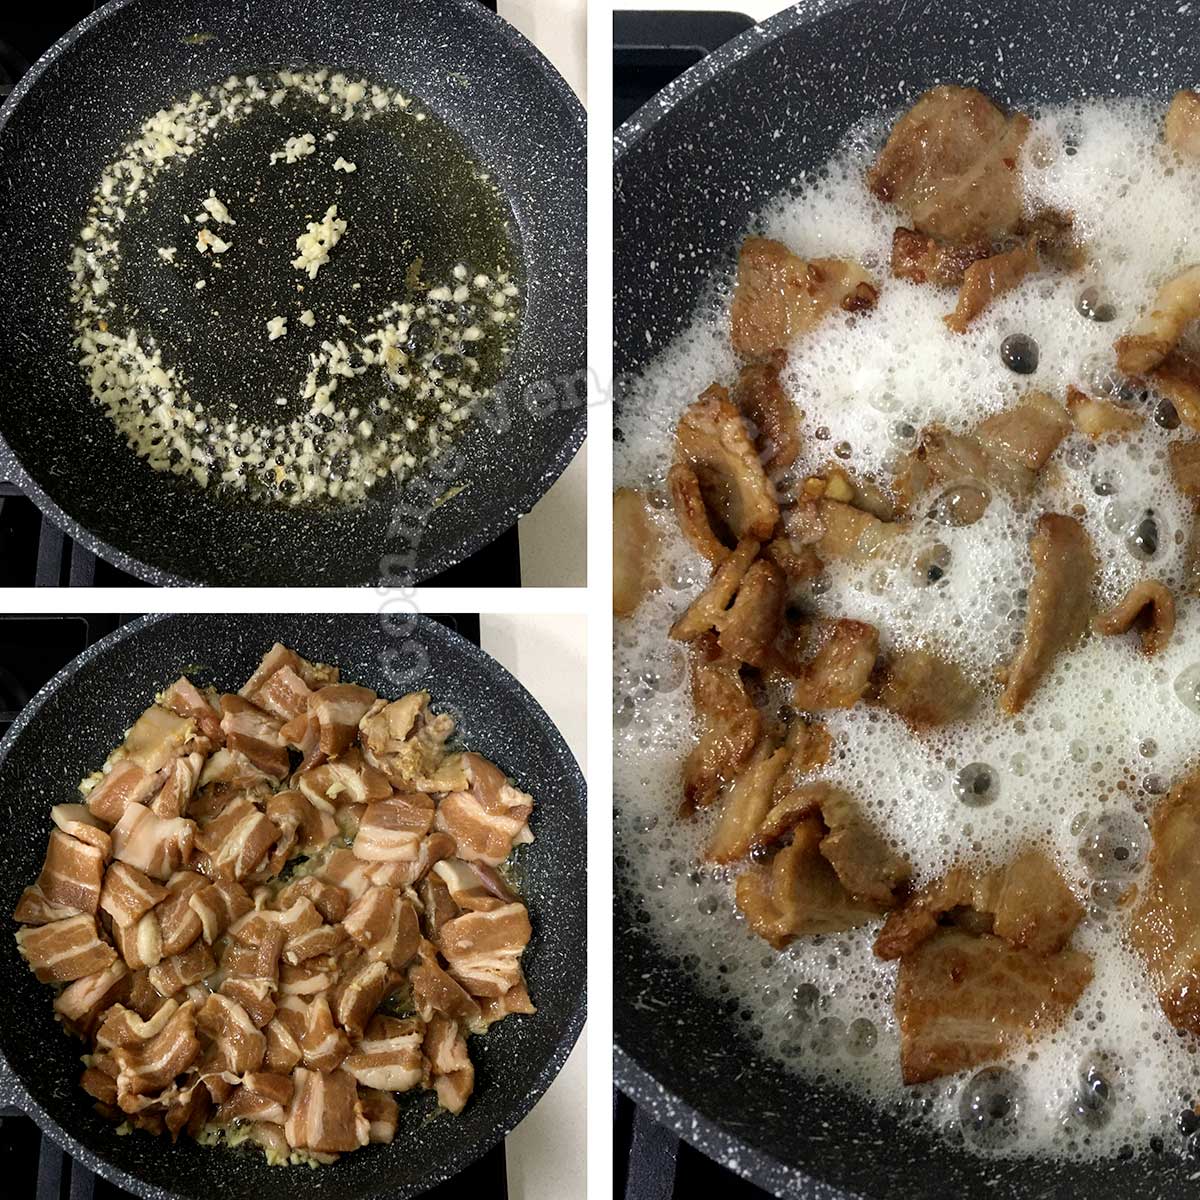 Pan frying pork with garlic